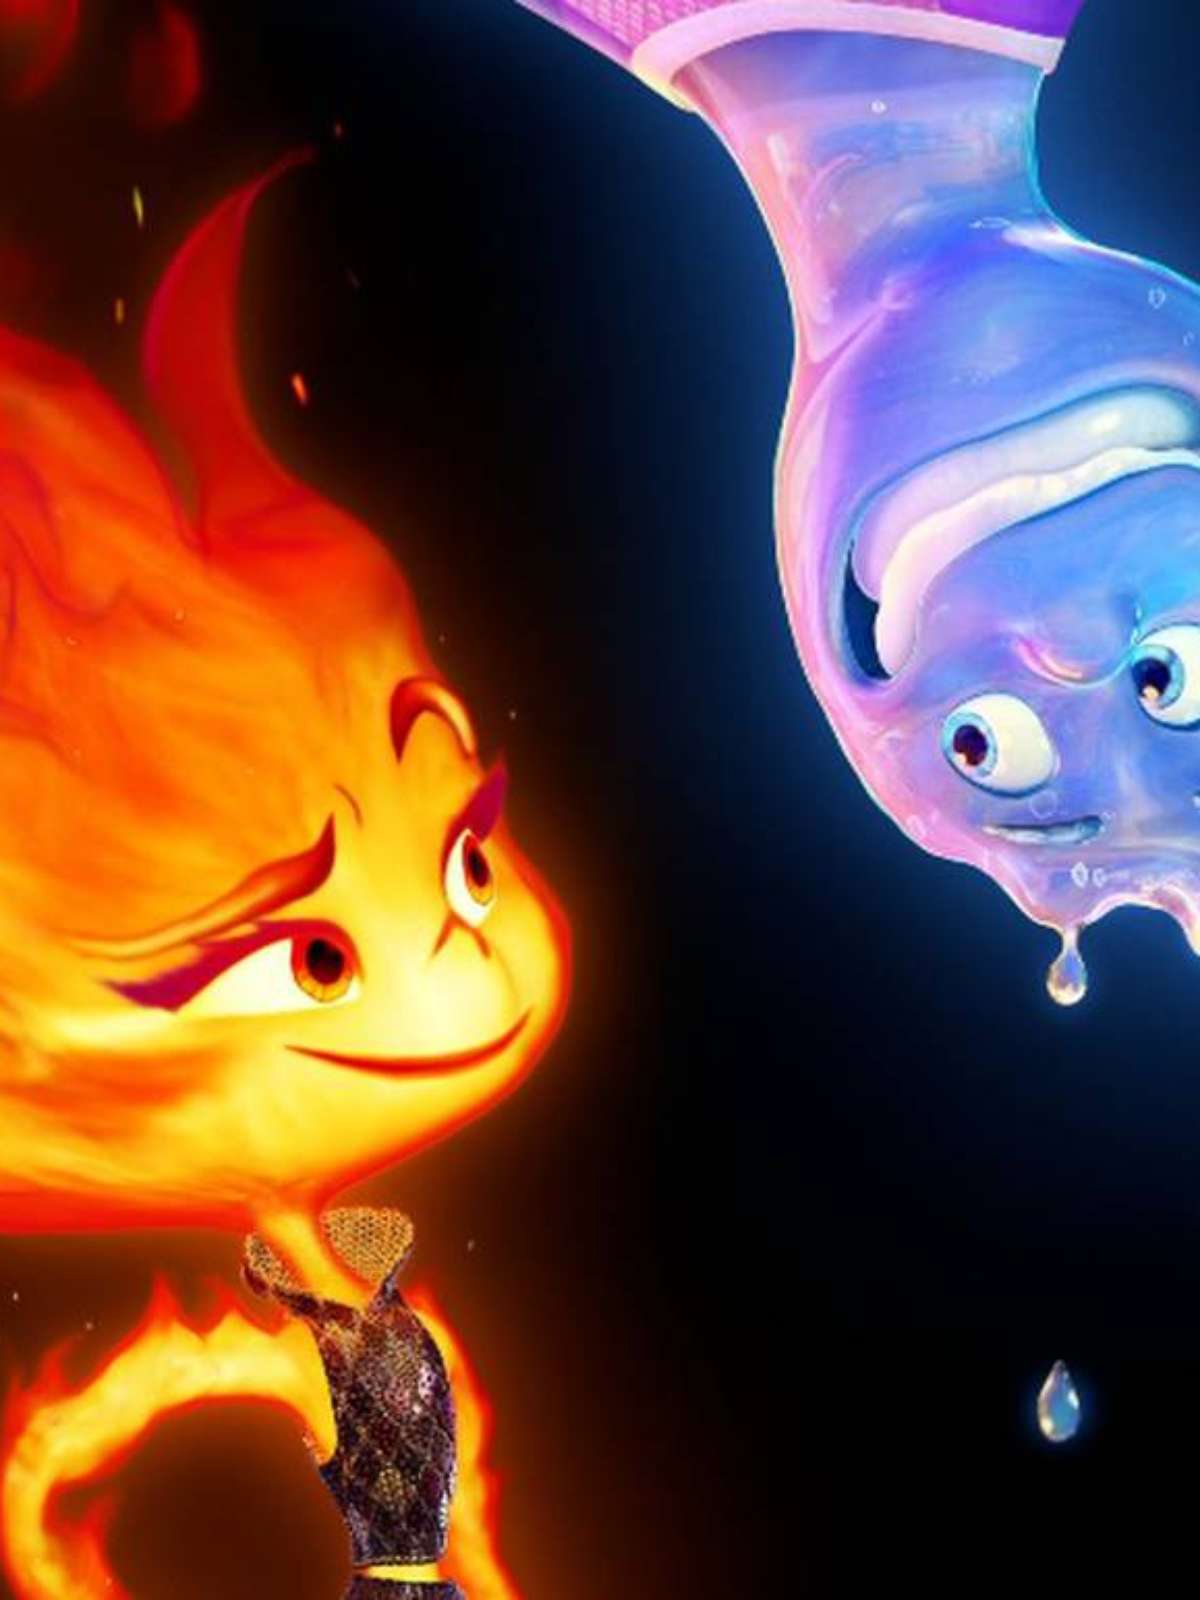 Elementos: filme da Disney e Pixar ganha novo trailer; assista